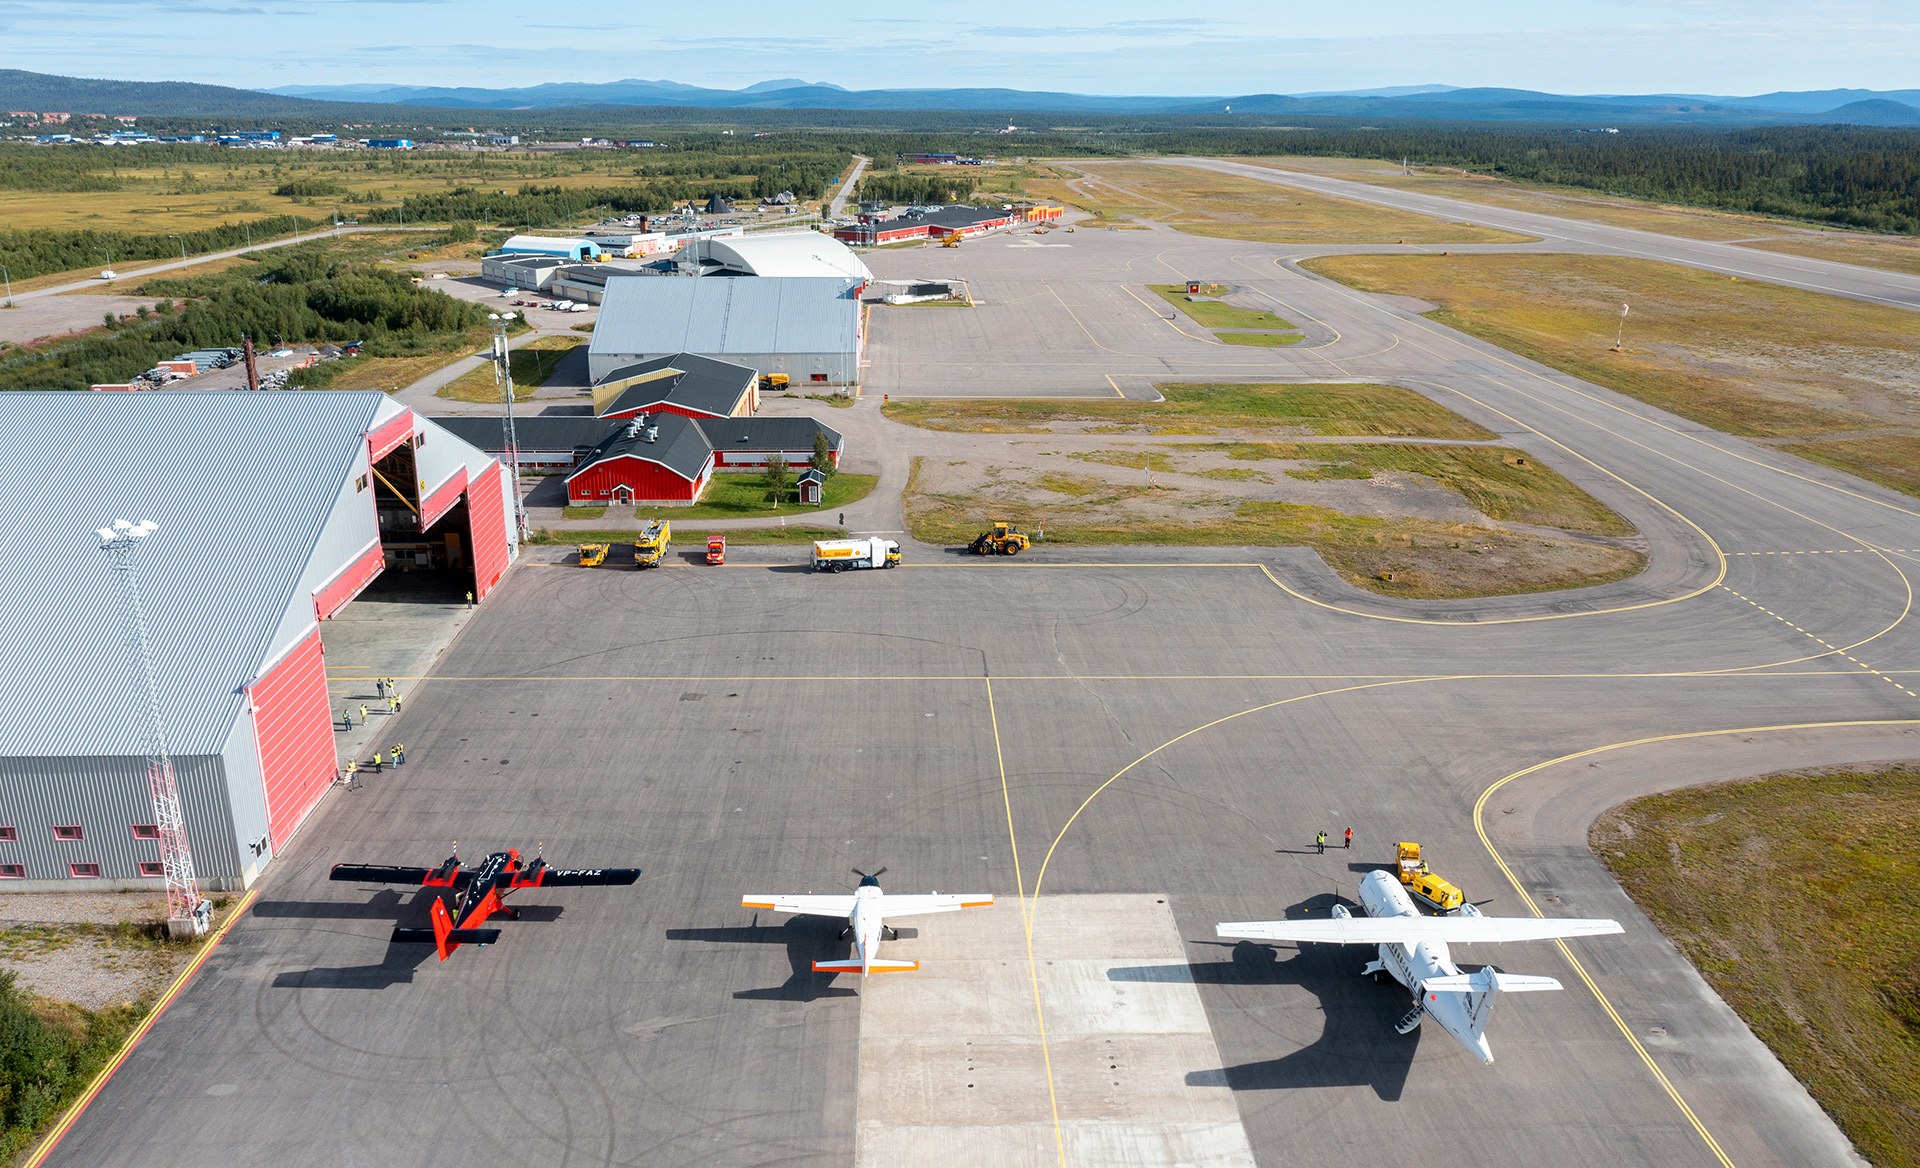 DLR-Cessna zwischen Twin Otter (links) und ATR-42 (rechts) in Kiruna